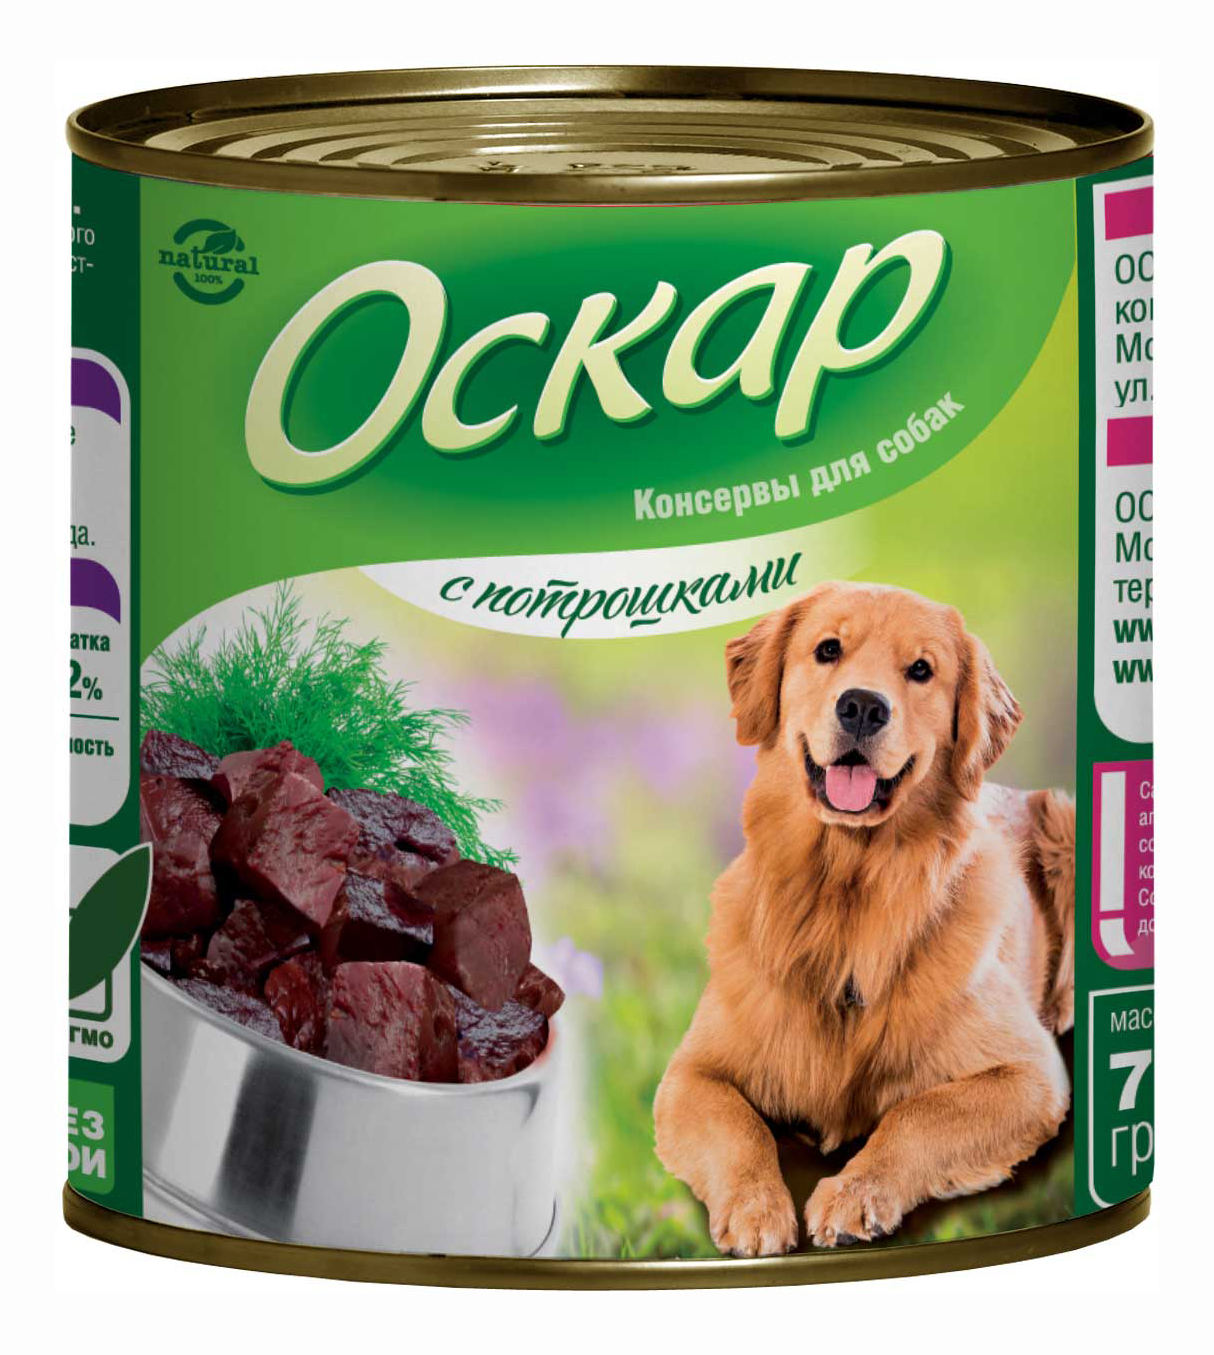 Консервы для собак Оскар, потрошки, 750г